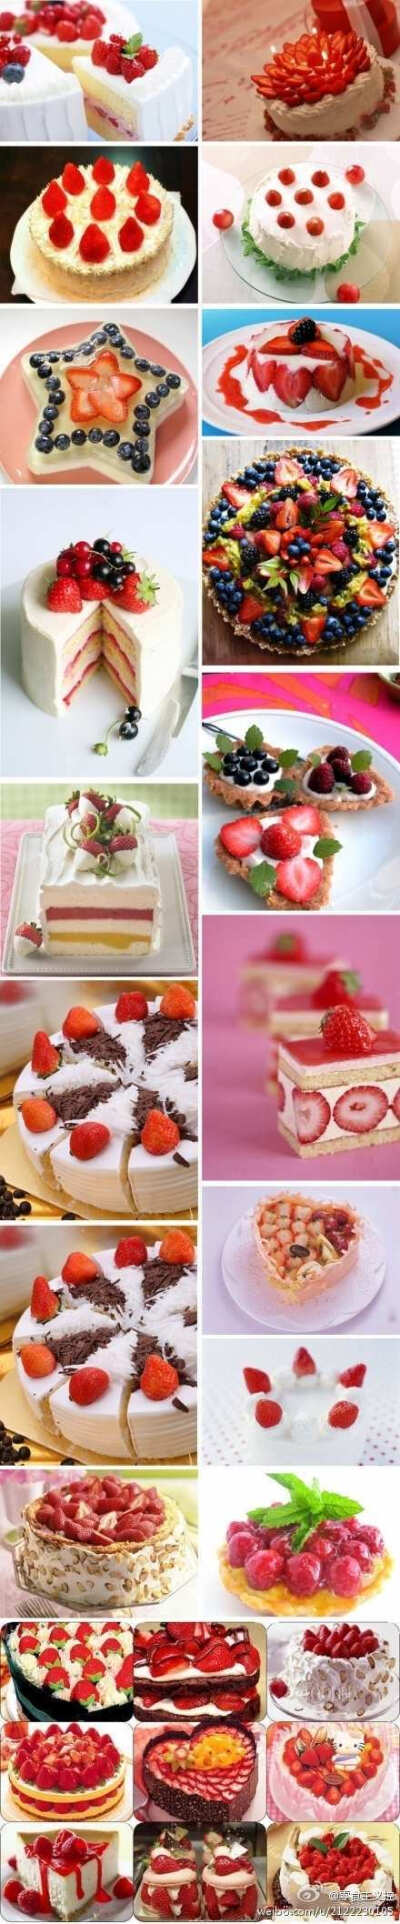 当草莓遇上蛋糕，当草莓遇上冰淇凌，当草莓遇上巧克力............所有热恋时的甜蜜和惊喜，都在唇齿间流离。